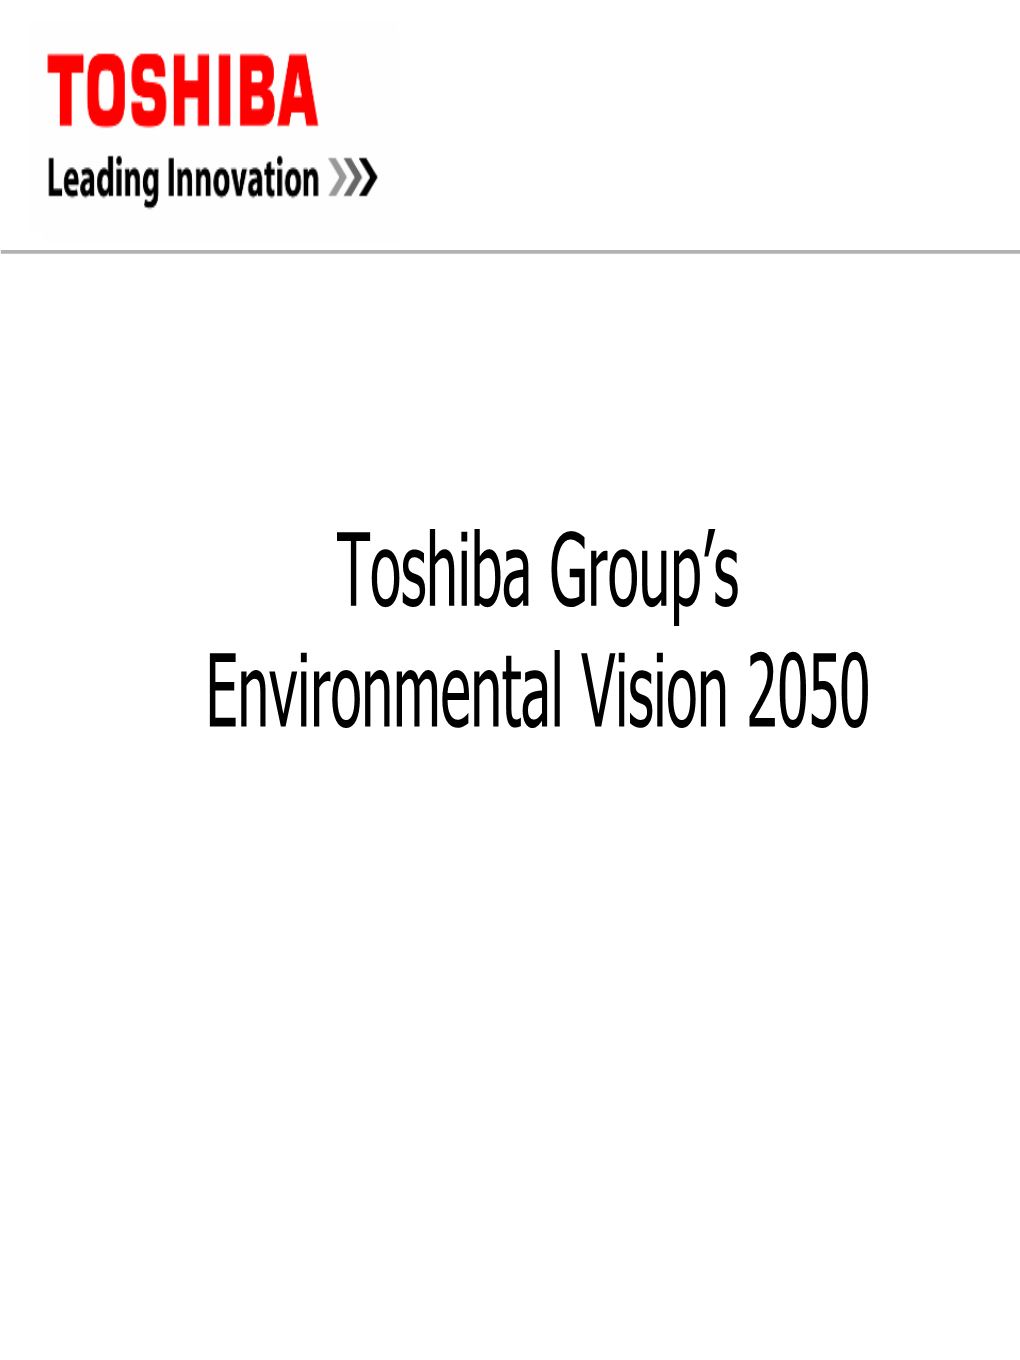 Toshiba Group's Environmental Vision 2050